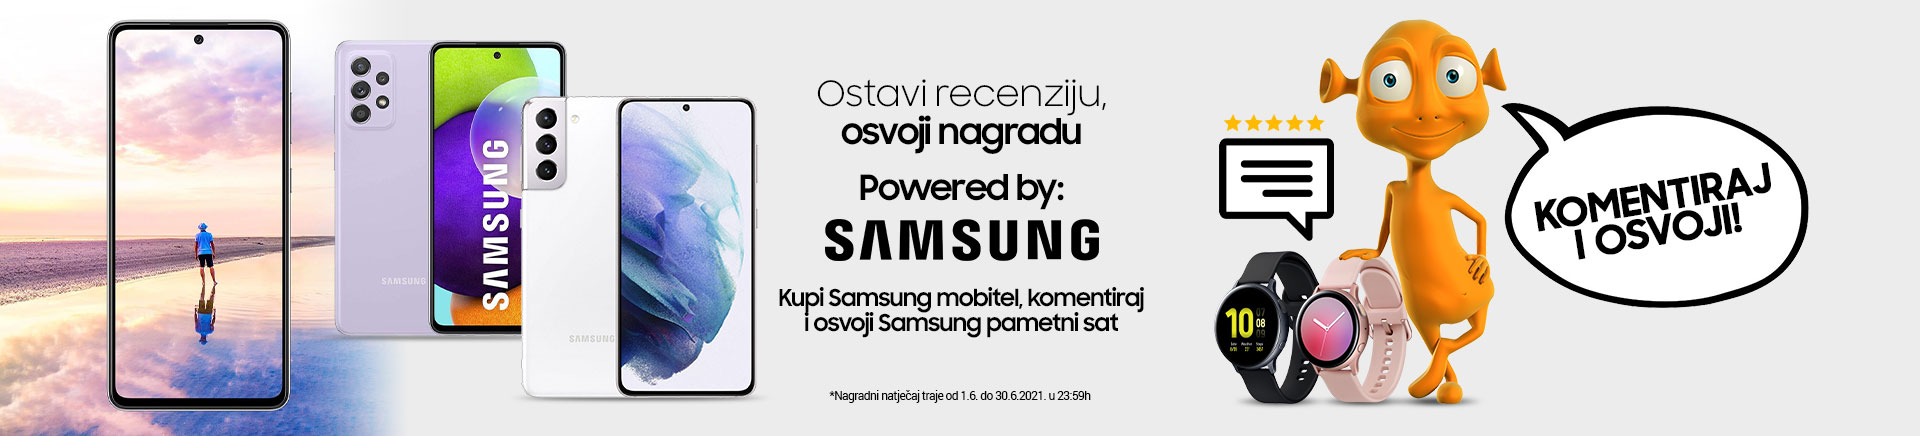 Kupi Samsung mobiteli komentiraj i osvoji pametni sat